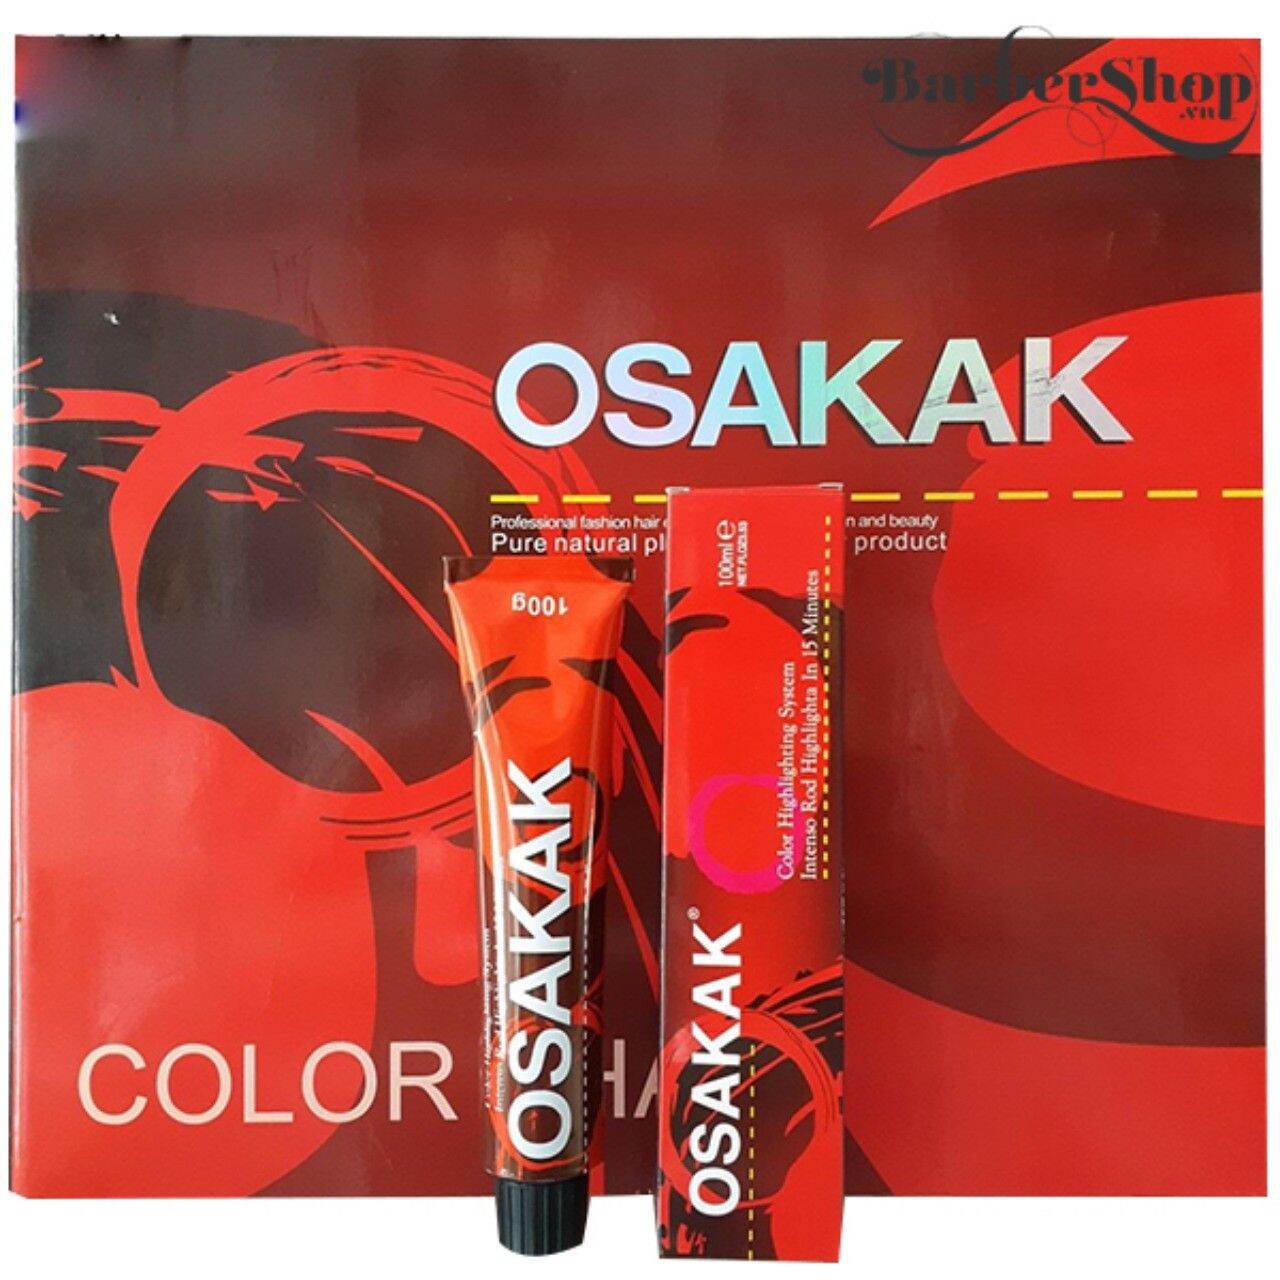 Kem nhuộm tóc Osakak 100g ( chưa bao gồm oxy ) nhập khẩu